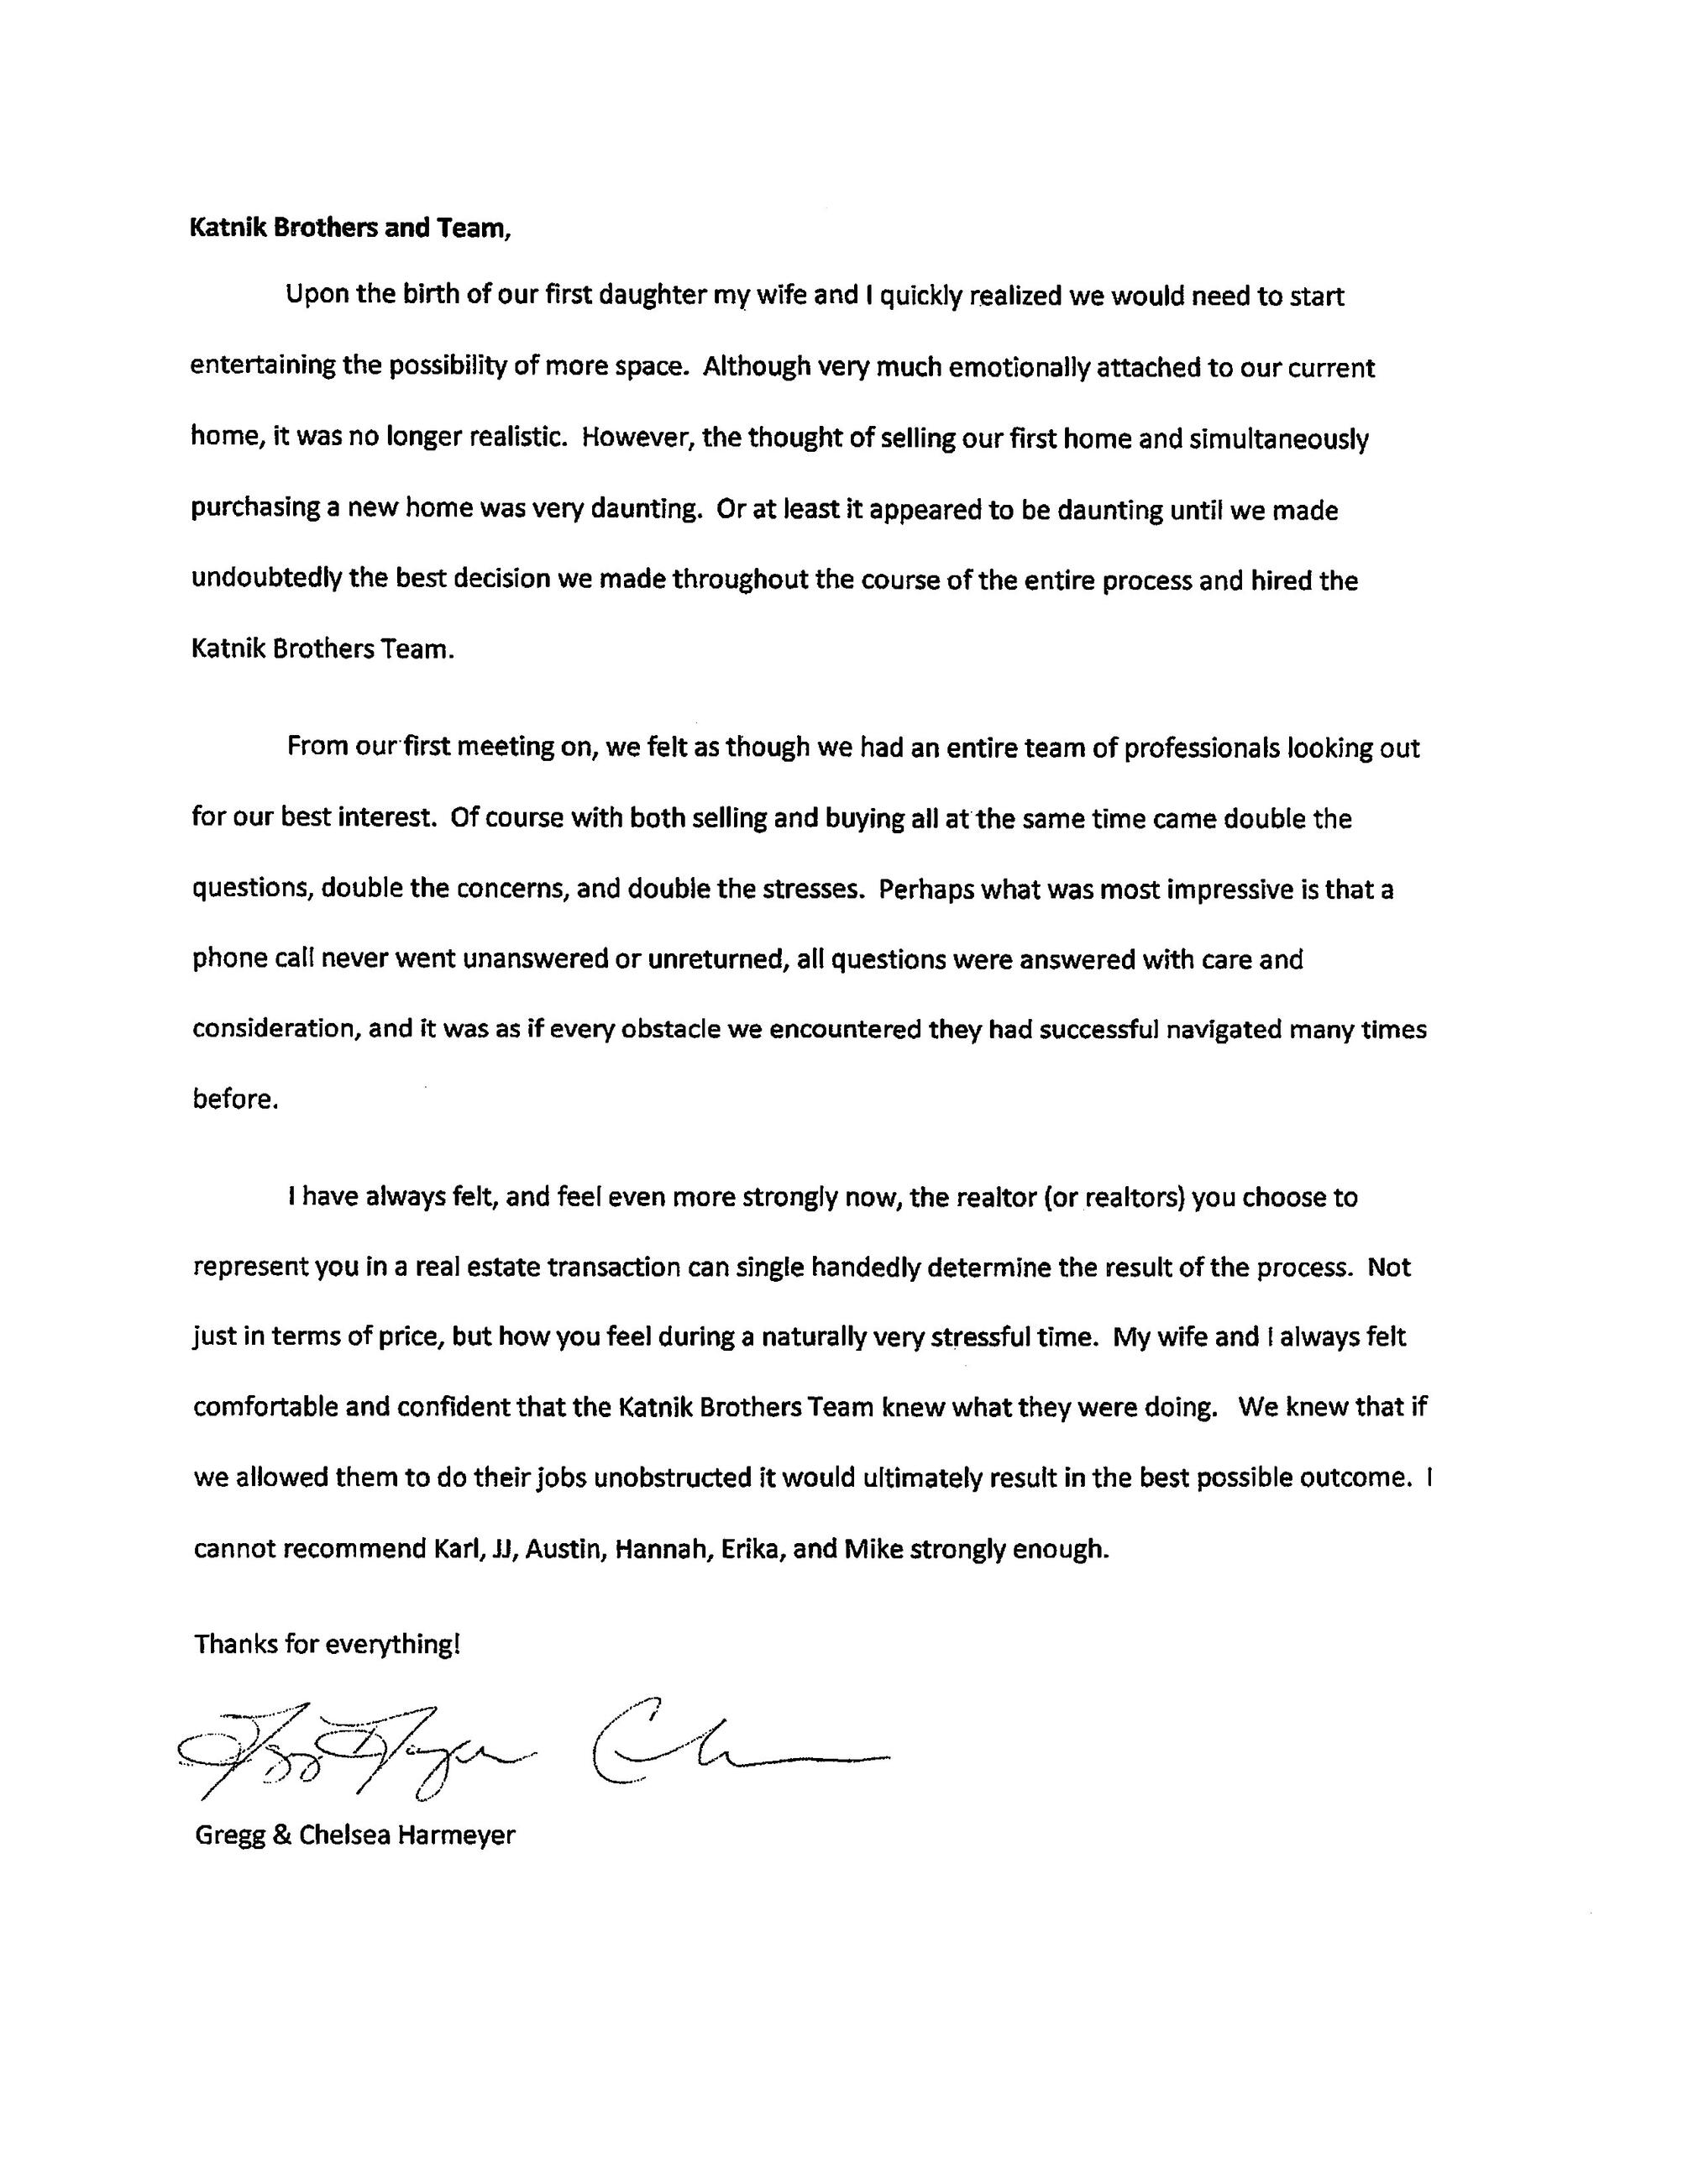 Harmeyer Family Letter 1